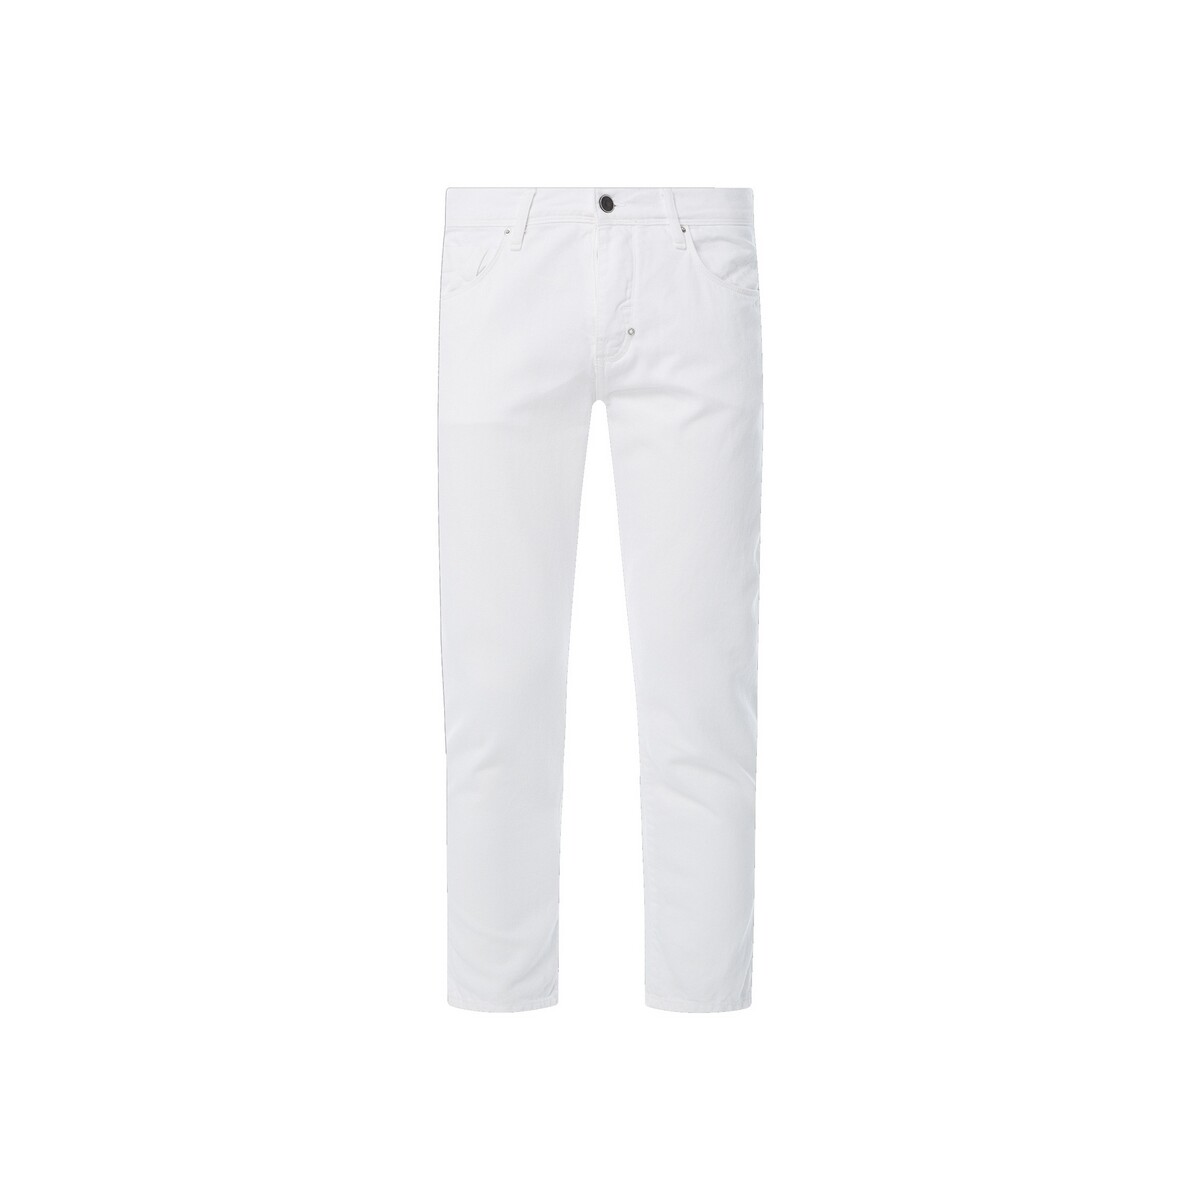 Abbigliamento Uomo Pantaloni Antony Morato MMTR00502 FA900123 Bianco